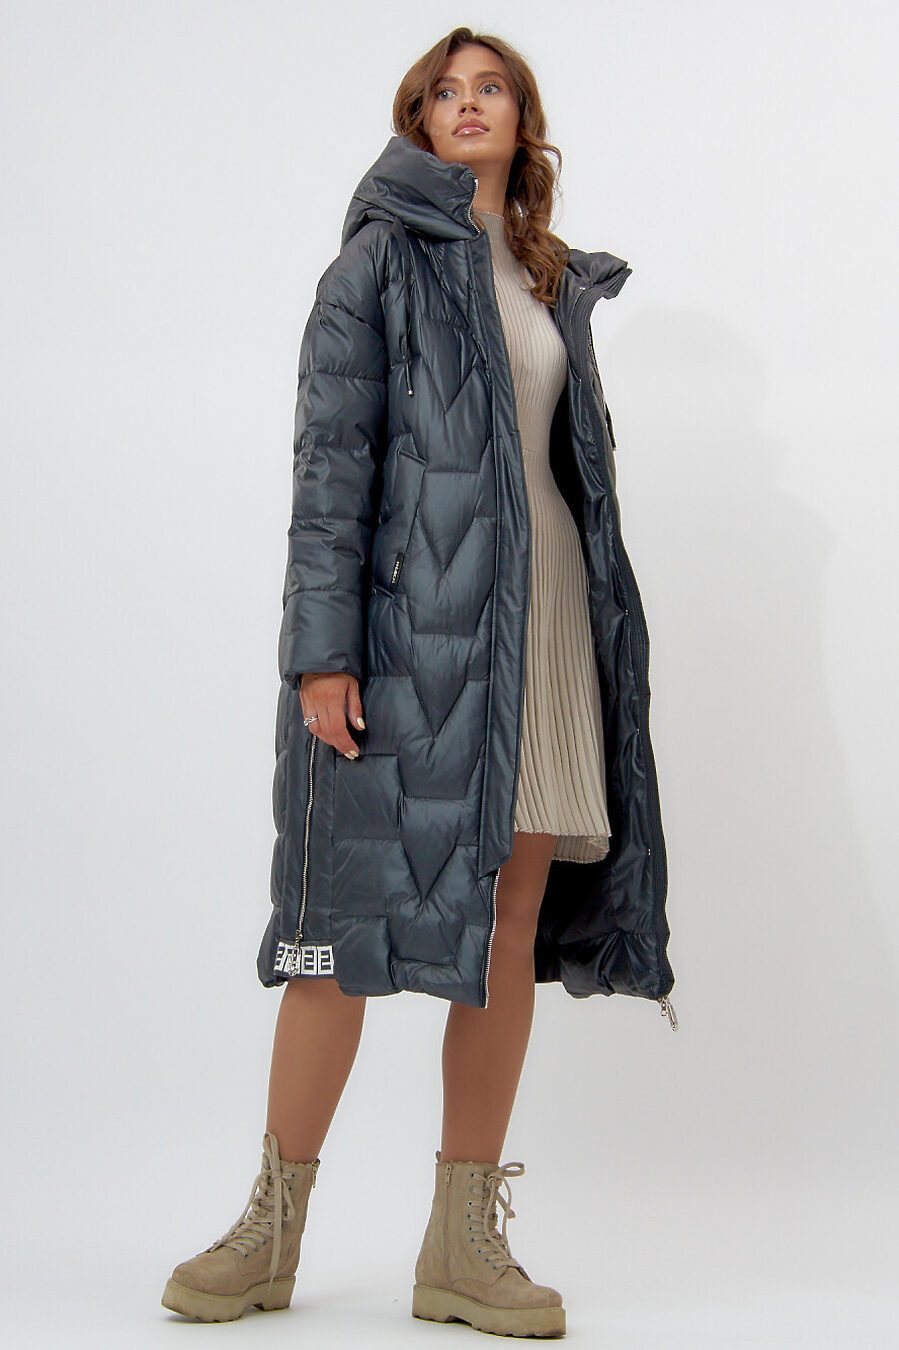 Пальто для женщин MTFORCE 807538 купить оптом от производителя. Совместная покупка женской одежды в OptMoyo